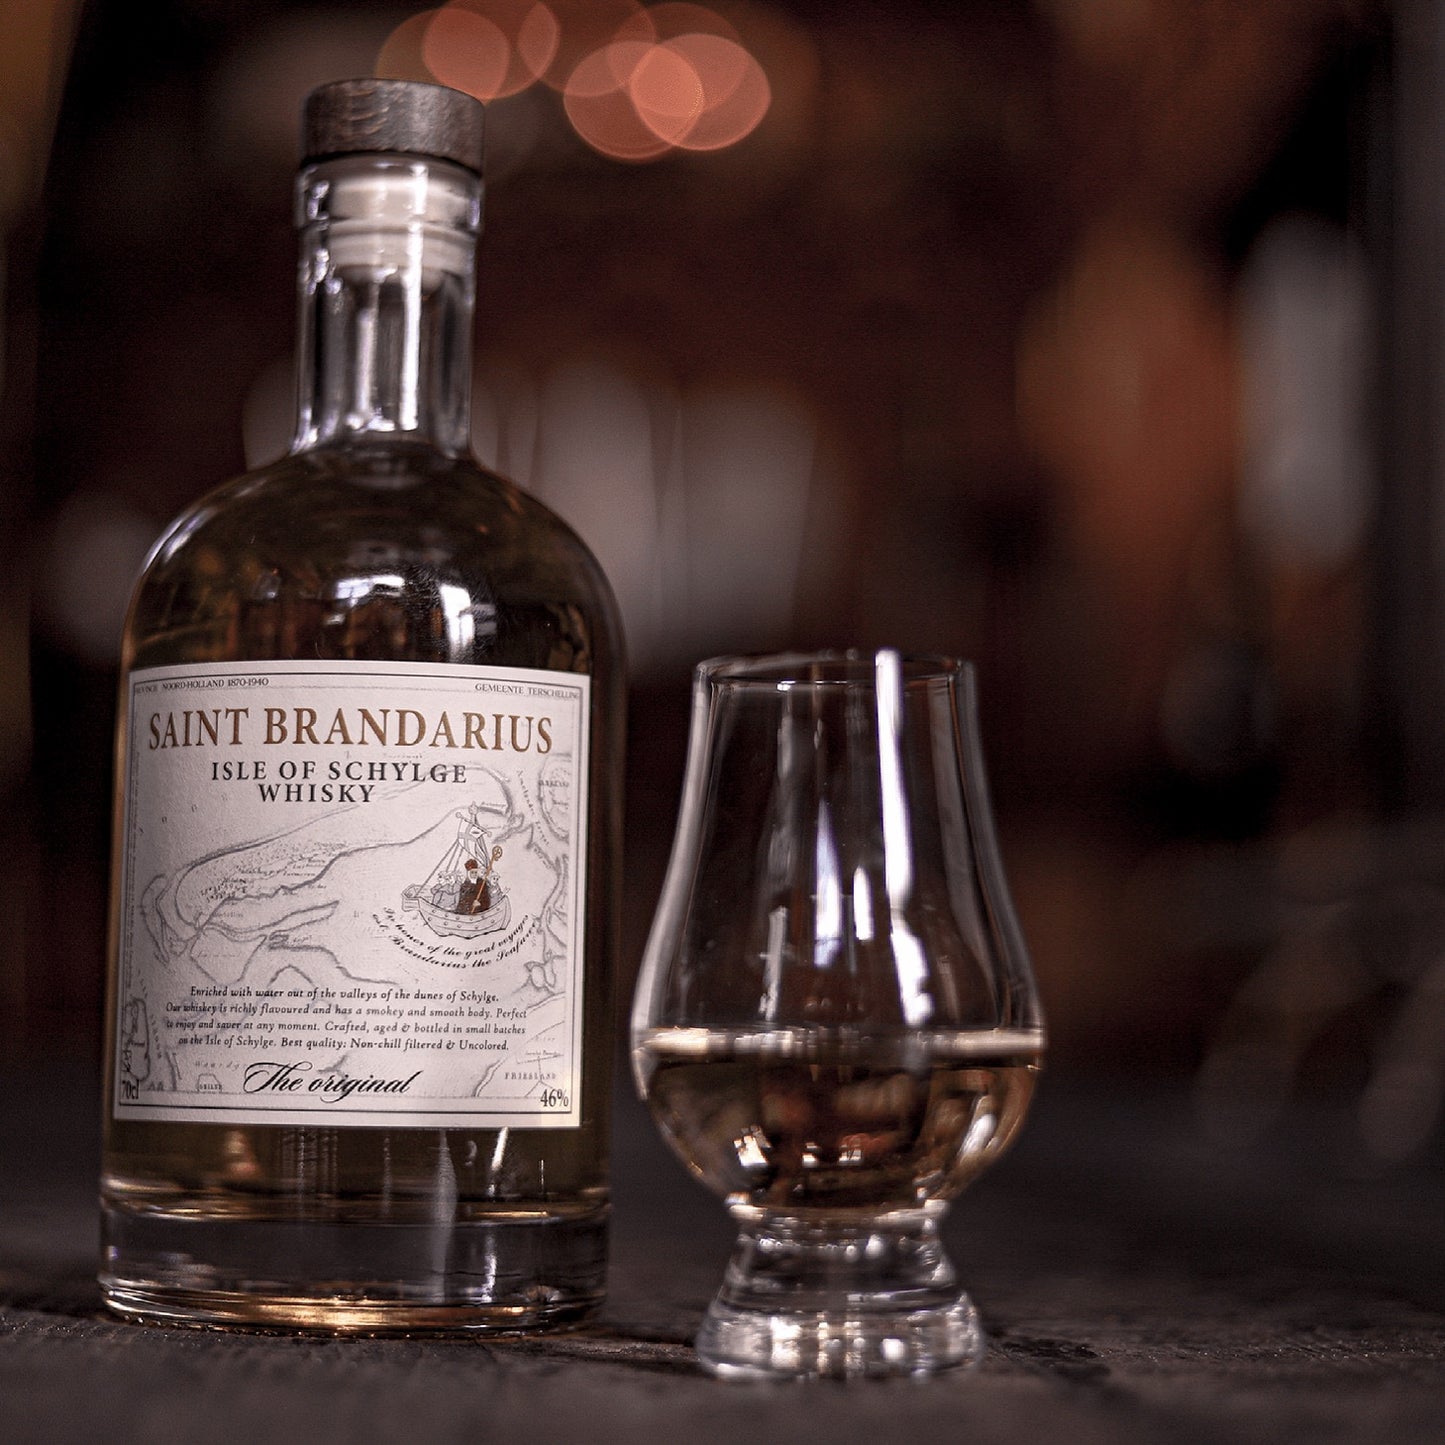 Bekroond tot de lekkerste whisky van Terschelling, de Saint Brandarius whisky afgebeeld op de bar met een ingeschonken glas.